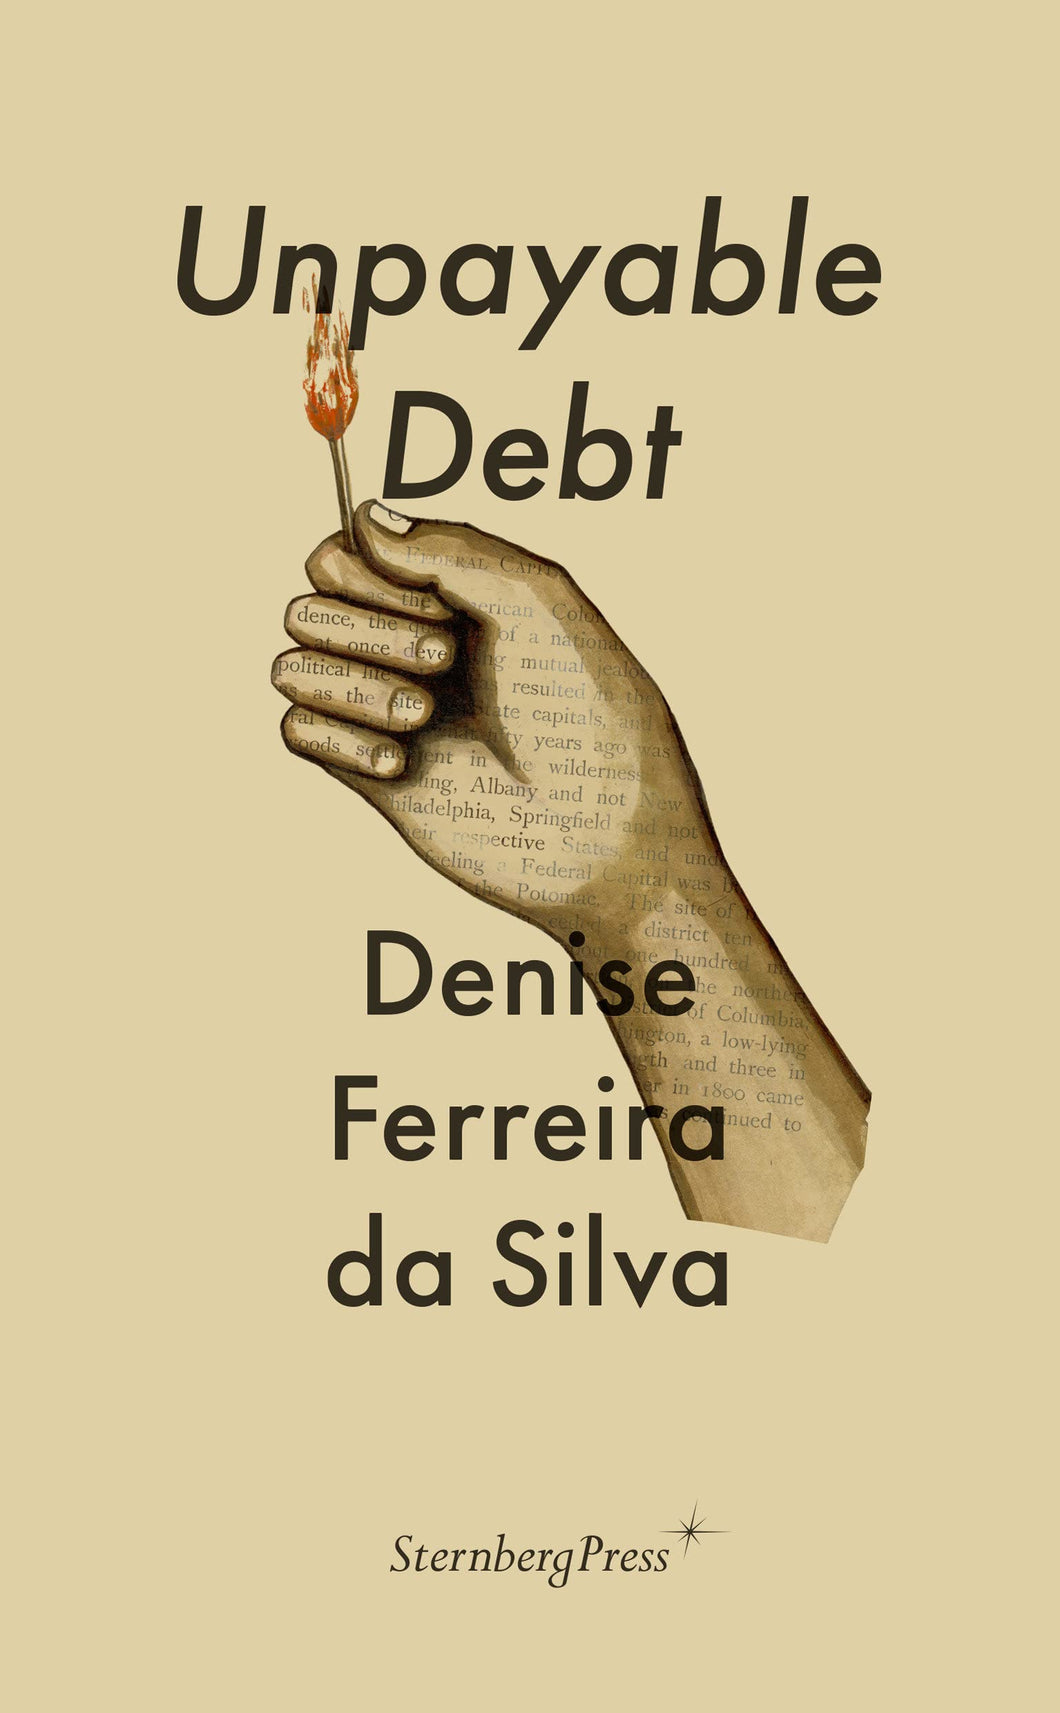 Denise Ferreira da Silva: Unpayable Debt